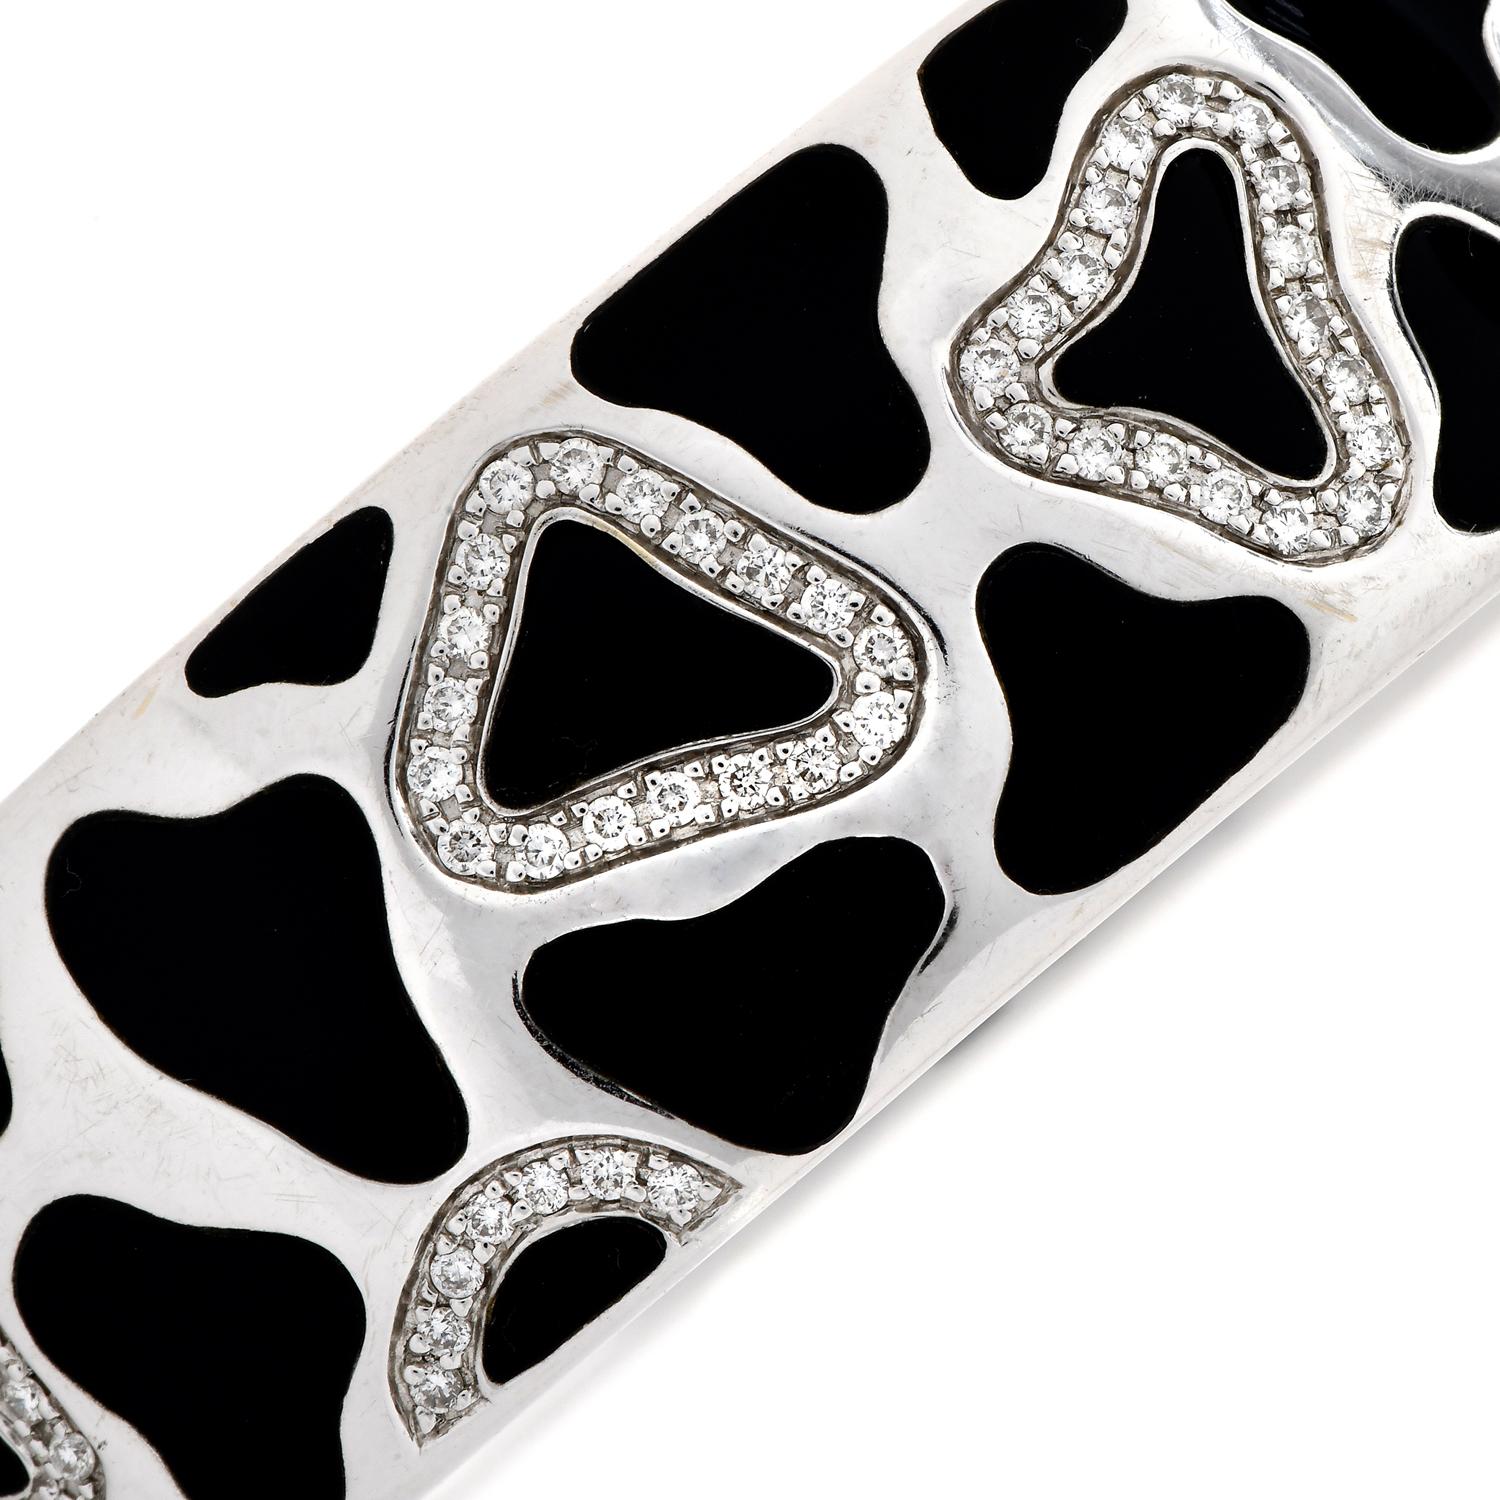 Panda collection Roberto Coin Diamond Onyx Gold Eternity Bracelet. Un bracelet classique en diamant et onyx noir, du créateur Roberto Coin.

Un bracelet fin de style éternel, façonné en or blanc massif 18K avec une incrustation d'onyx noirs de